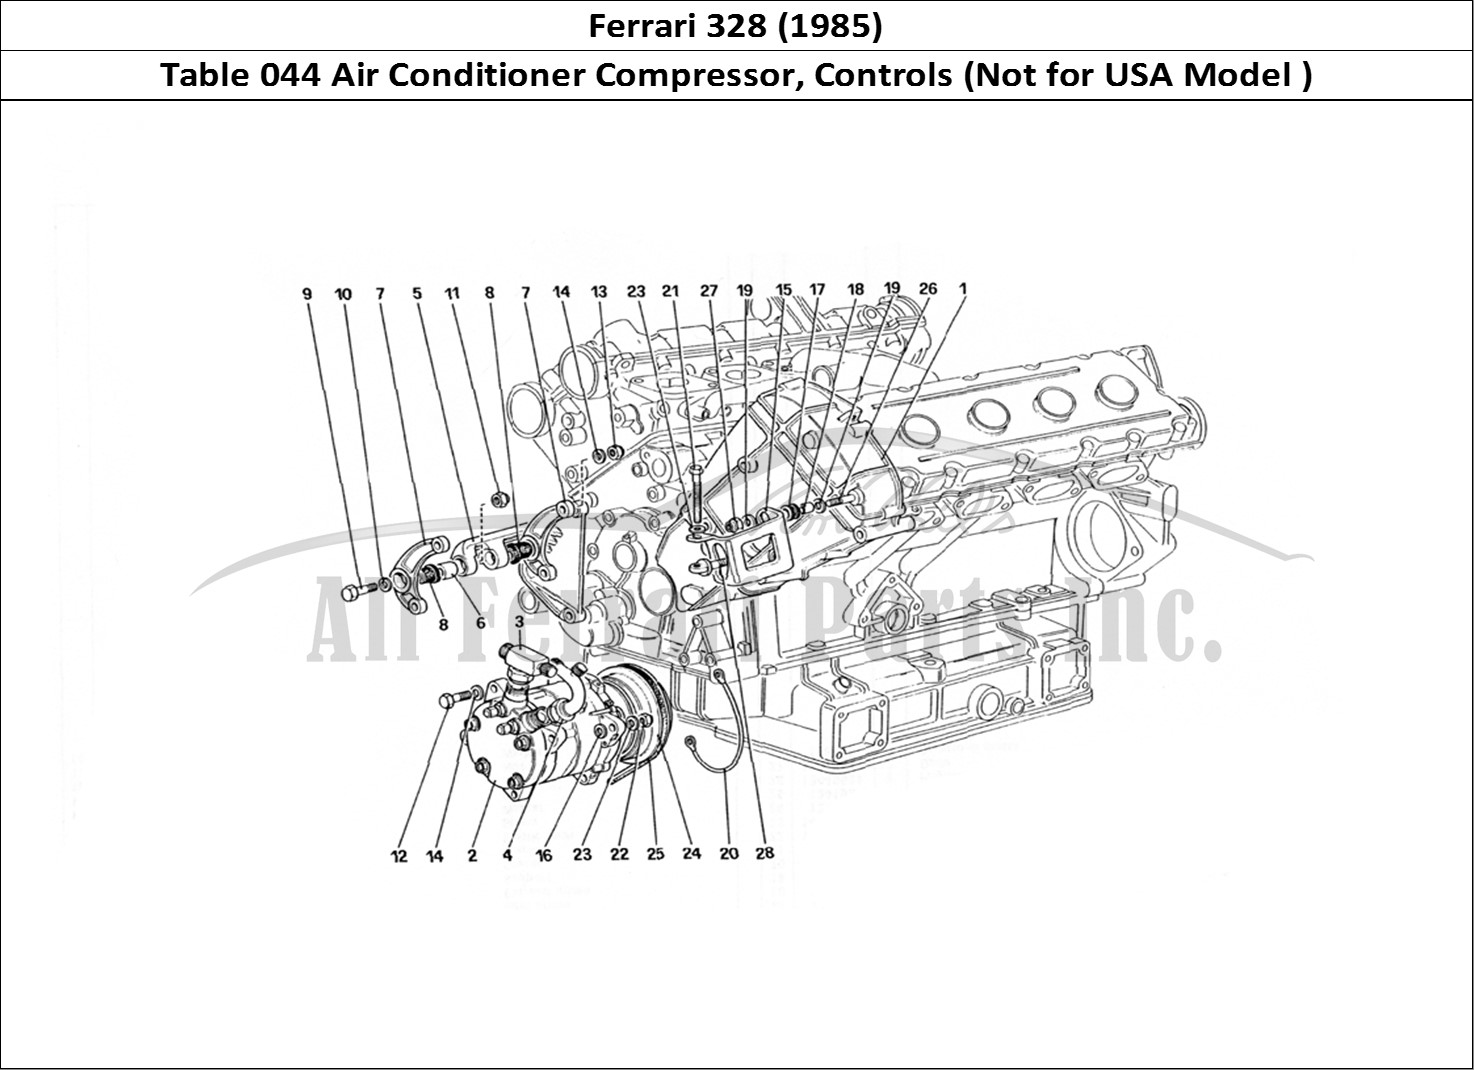 Ferrari Parts Ferrari 328 (1985) Page 044 Air Conditioning Compress